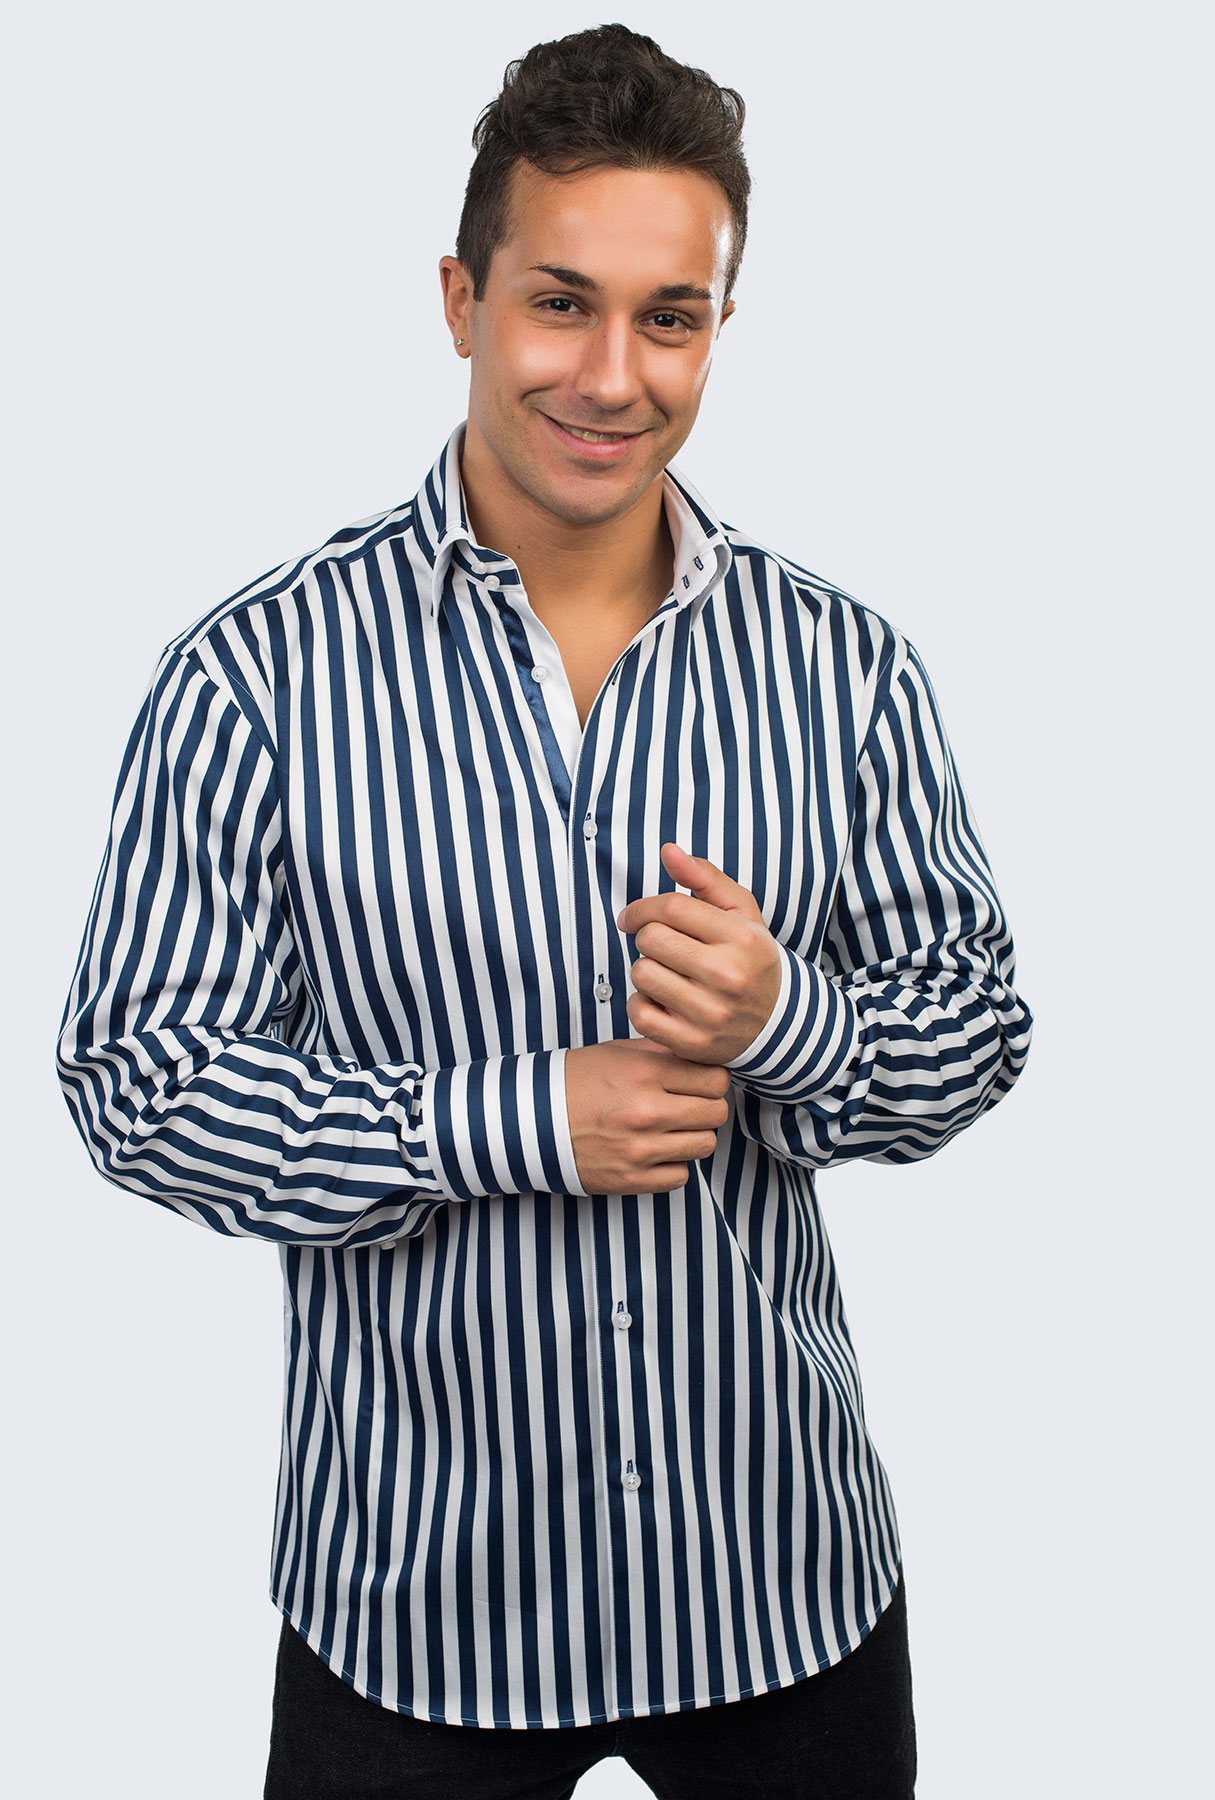 Мужчина в полосатой рубашке